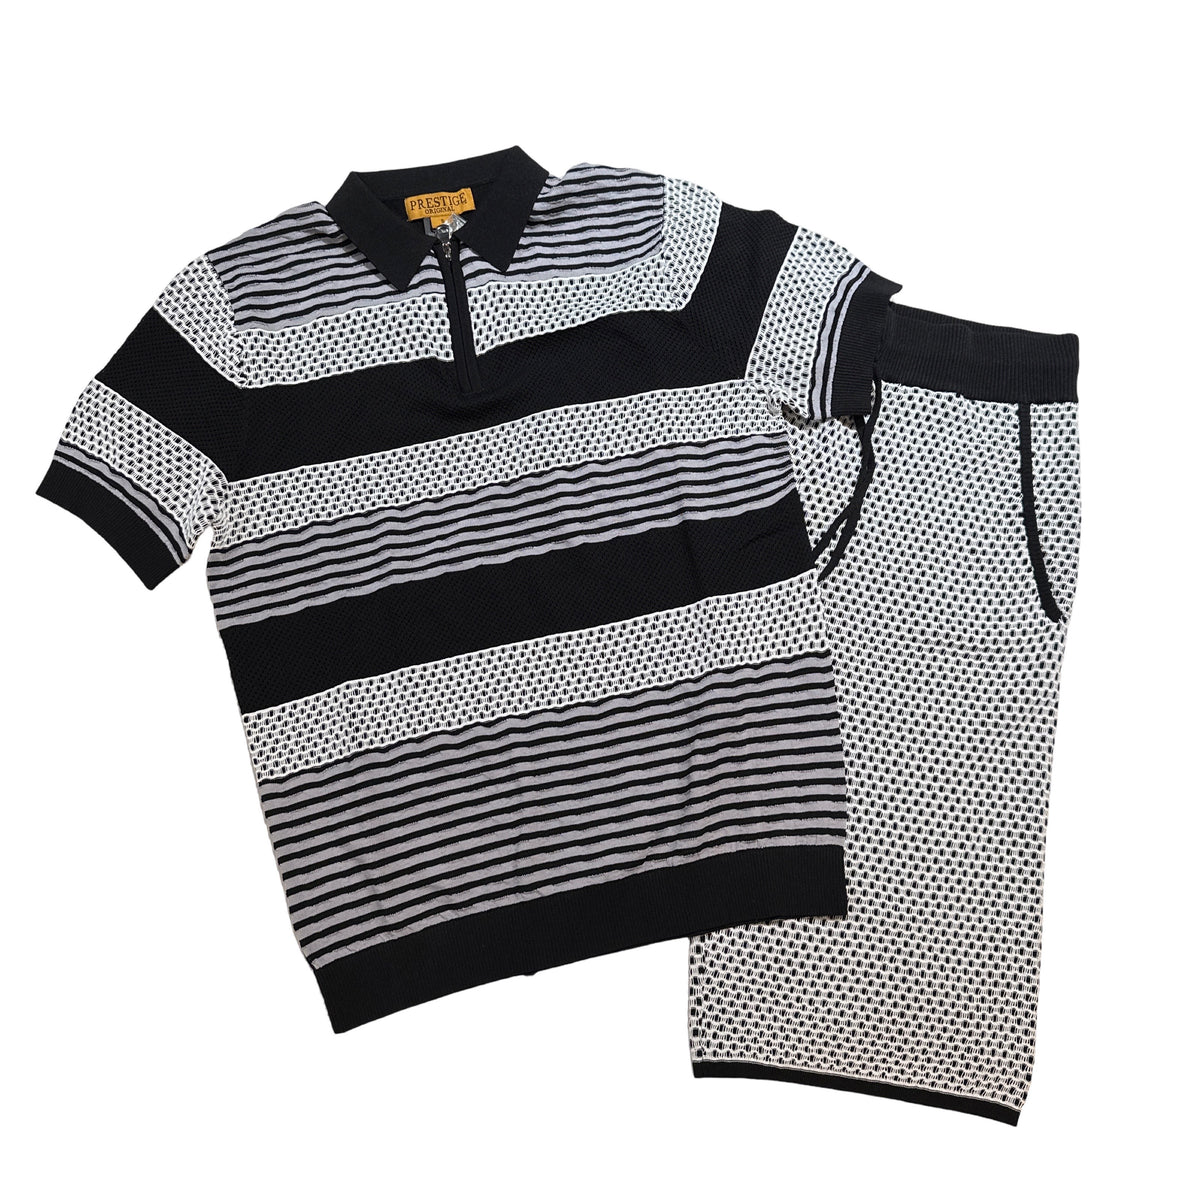 Prestige Gray Lace Ribs Knit Shorts & Shirt Set - Dudes Boutique